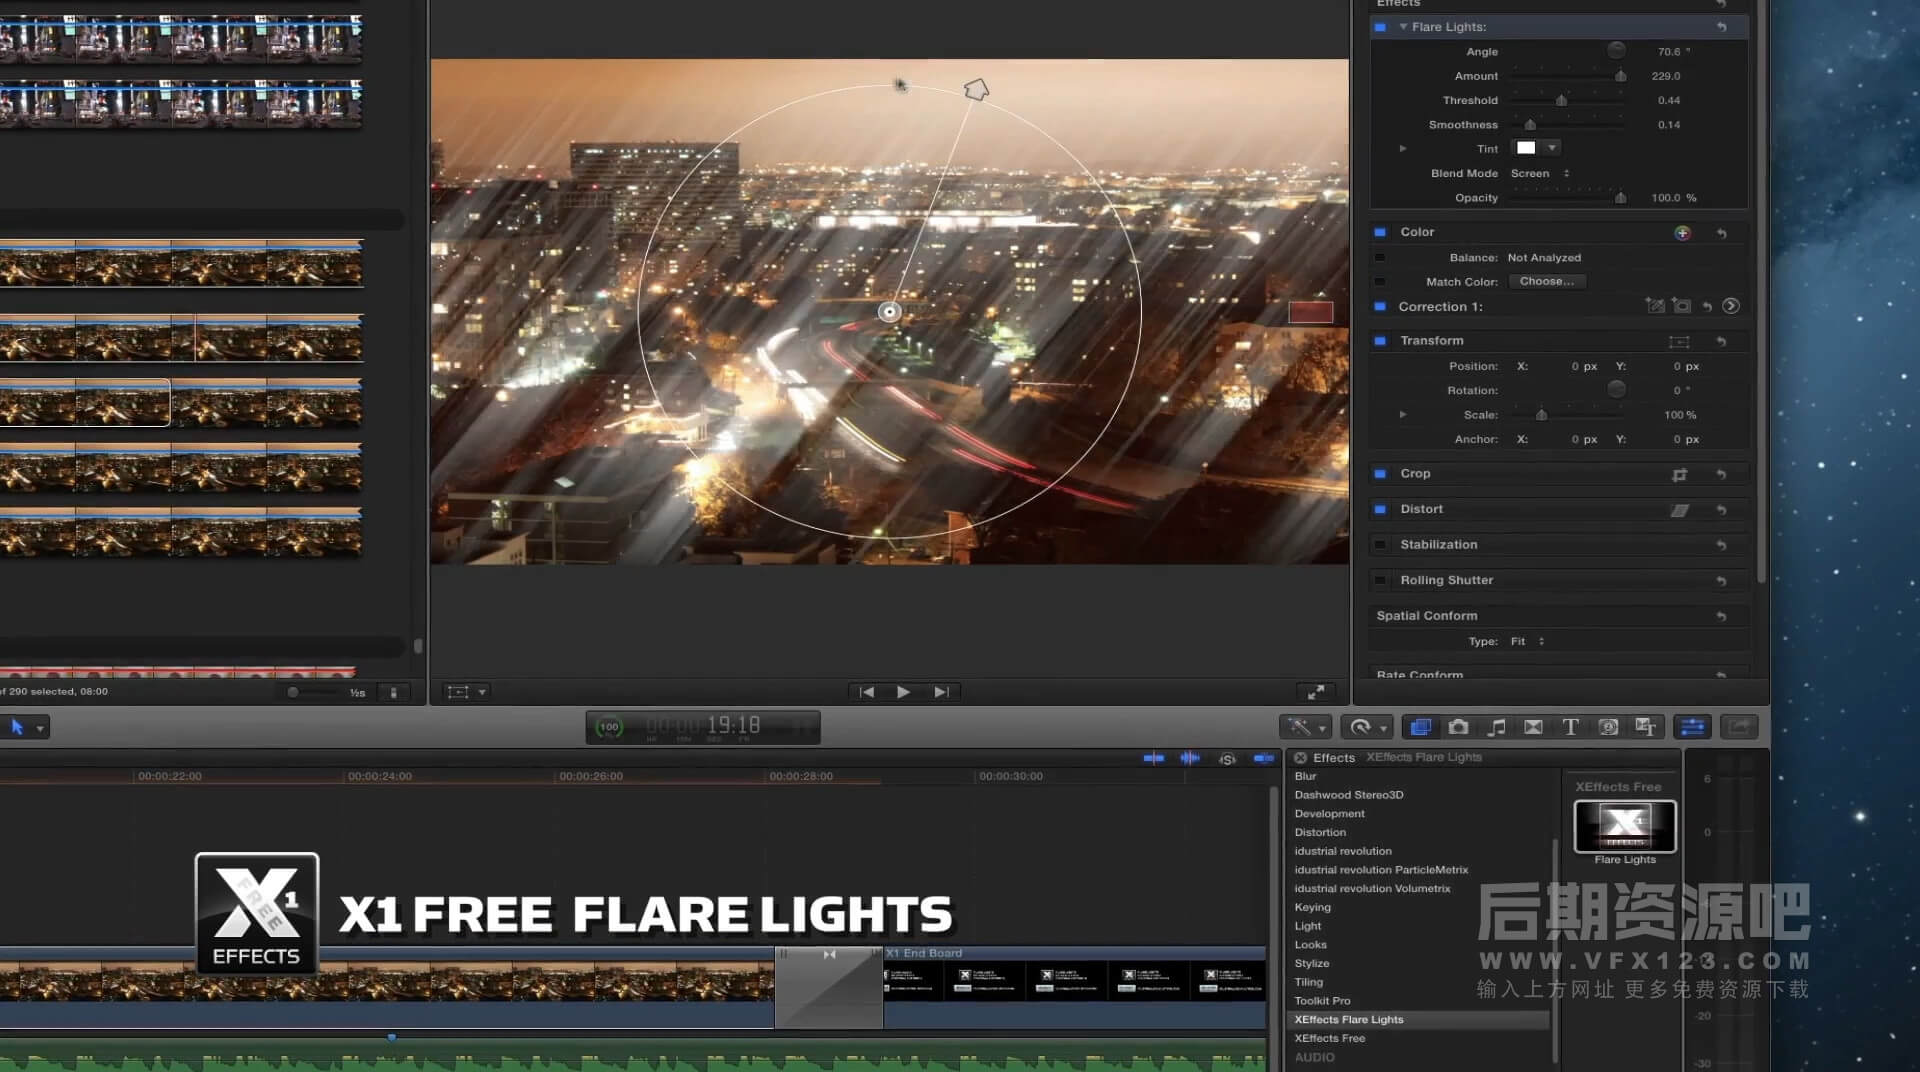 Fcpx插件 模拟相机长时间曝光条纹光效 XEffects Flare Lights | MAC影视后期资源站